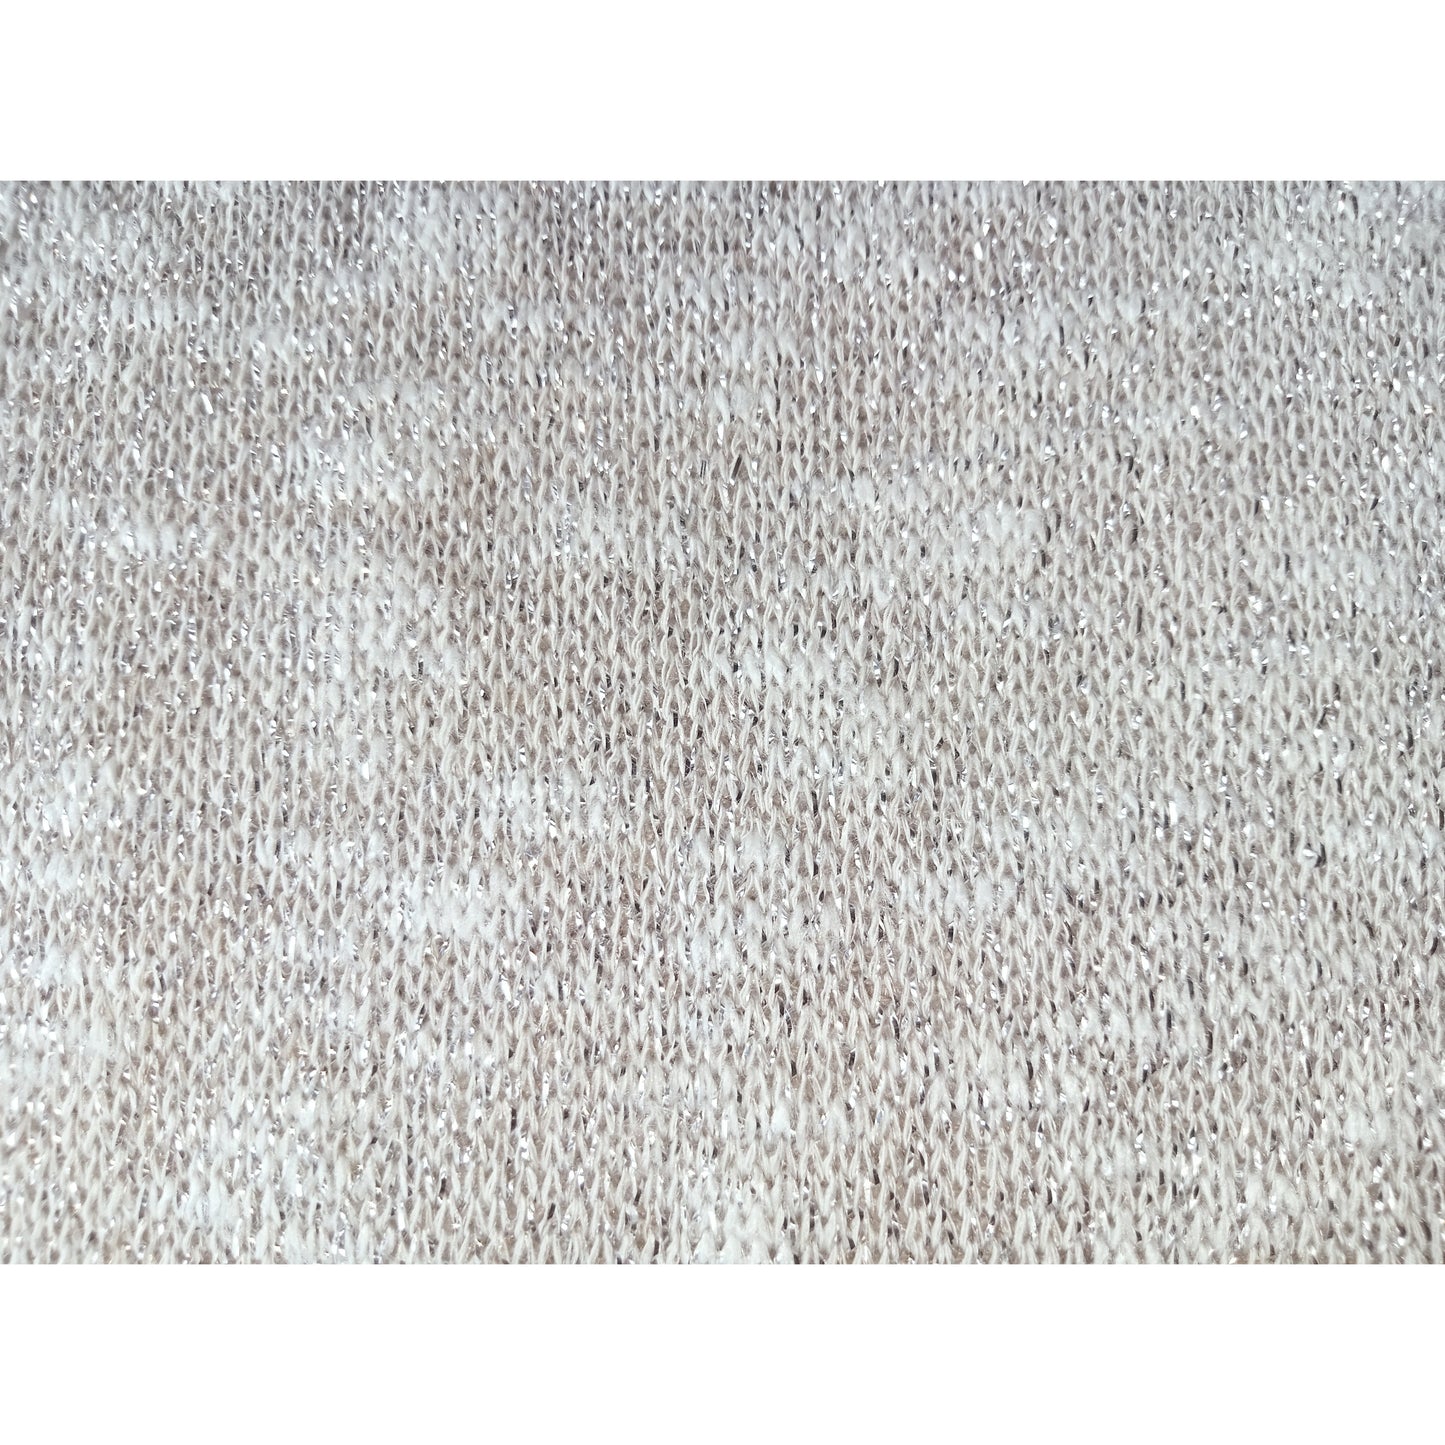 Shimmer - slub yarn knit fabric - sold by 1/2mtr